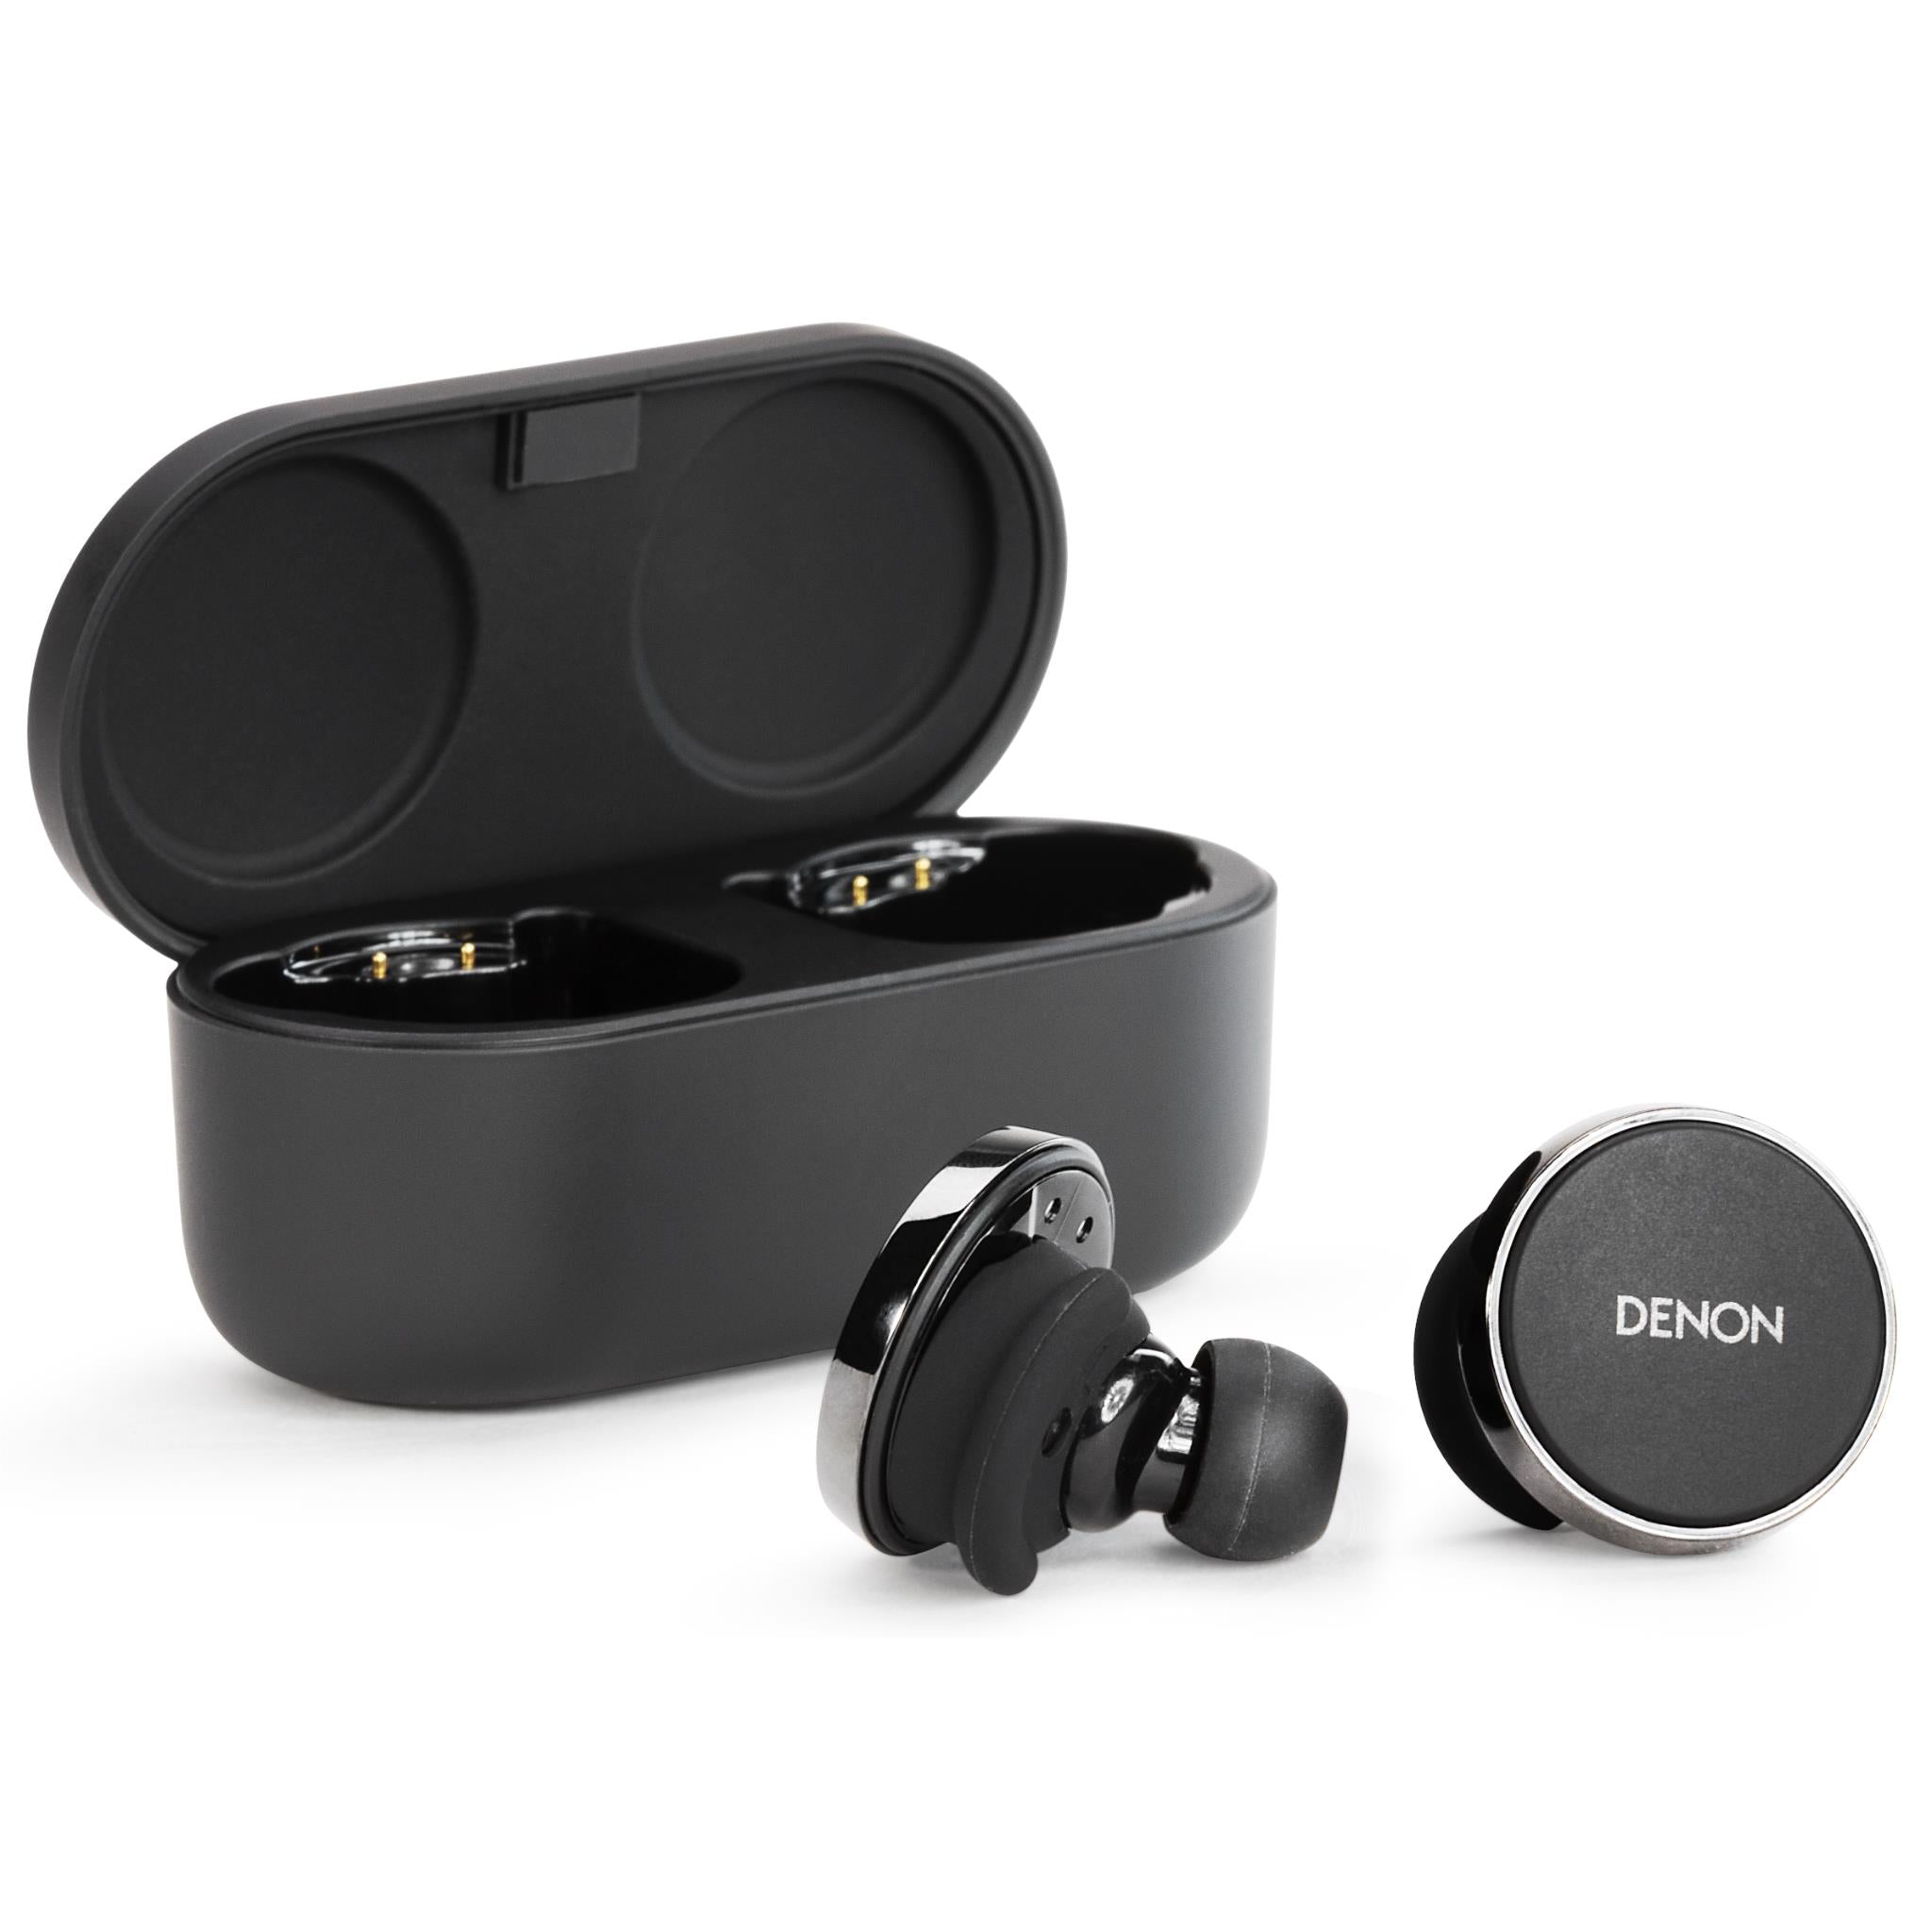 denon perl pro true wireless anc in-ear headphones